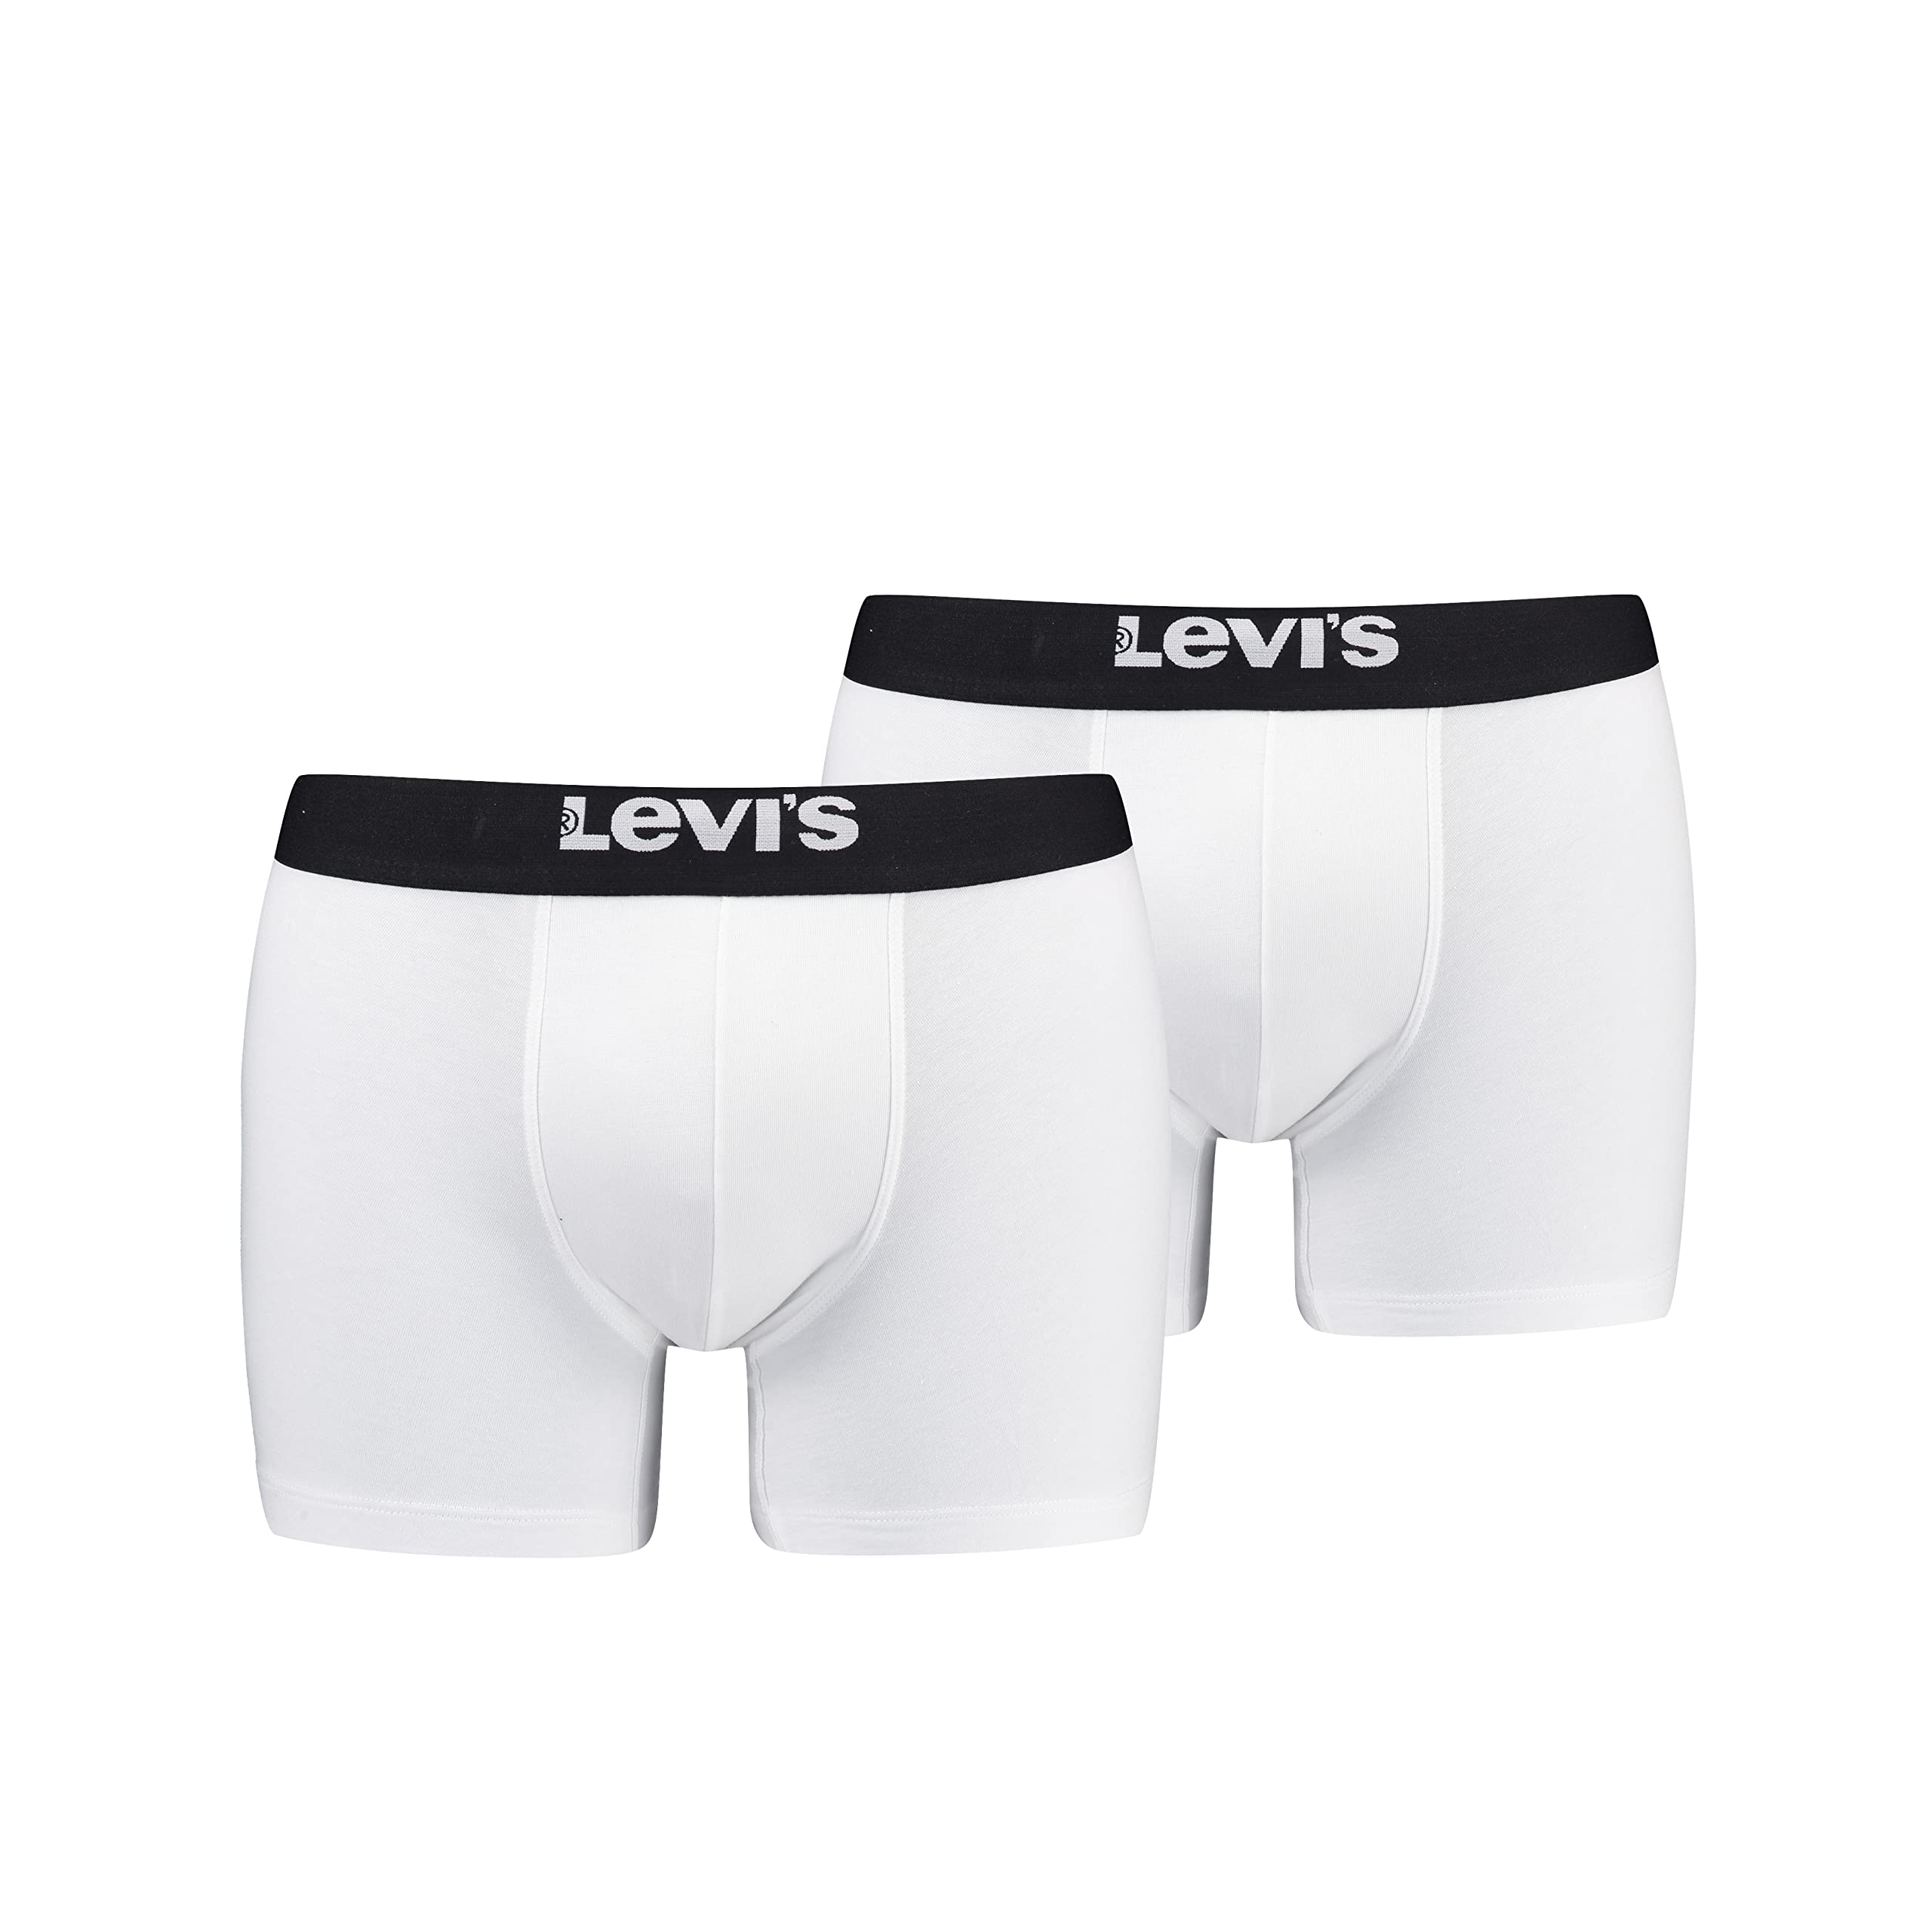 Levi's Herren Solid Basic Boxer, White/Black, M